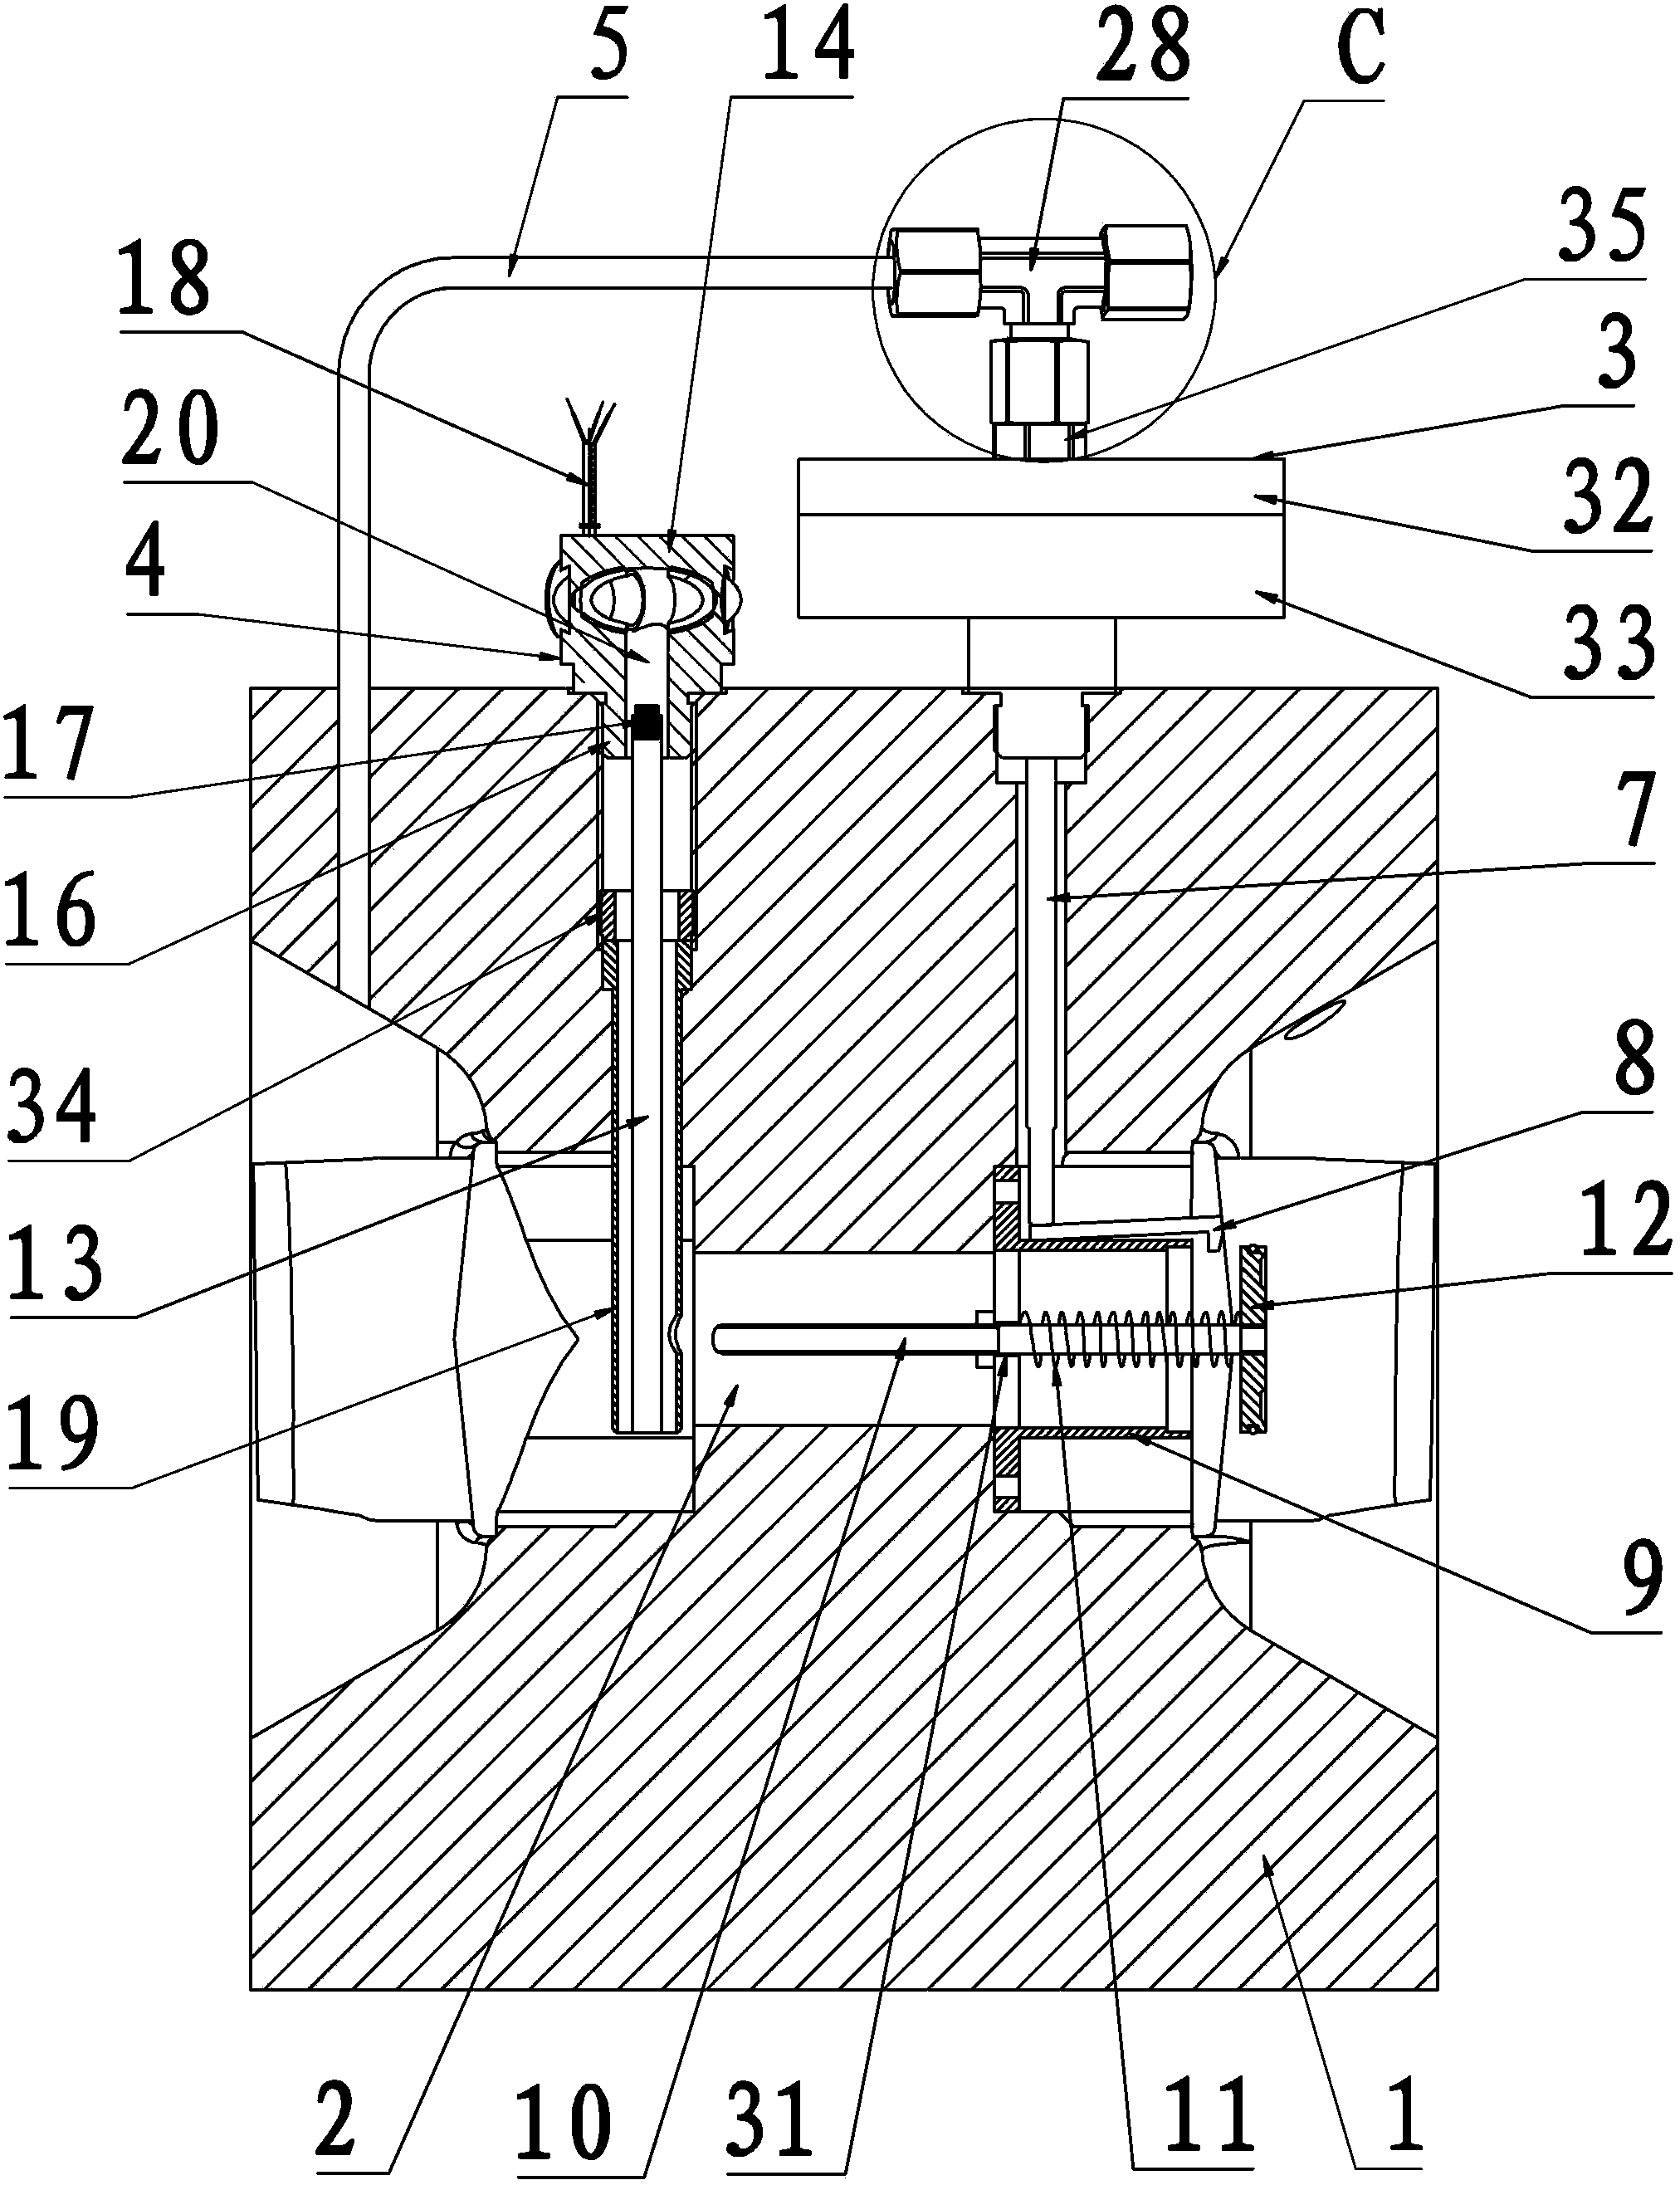 Gas roots type flow meter